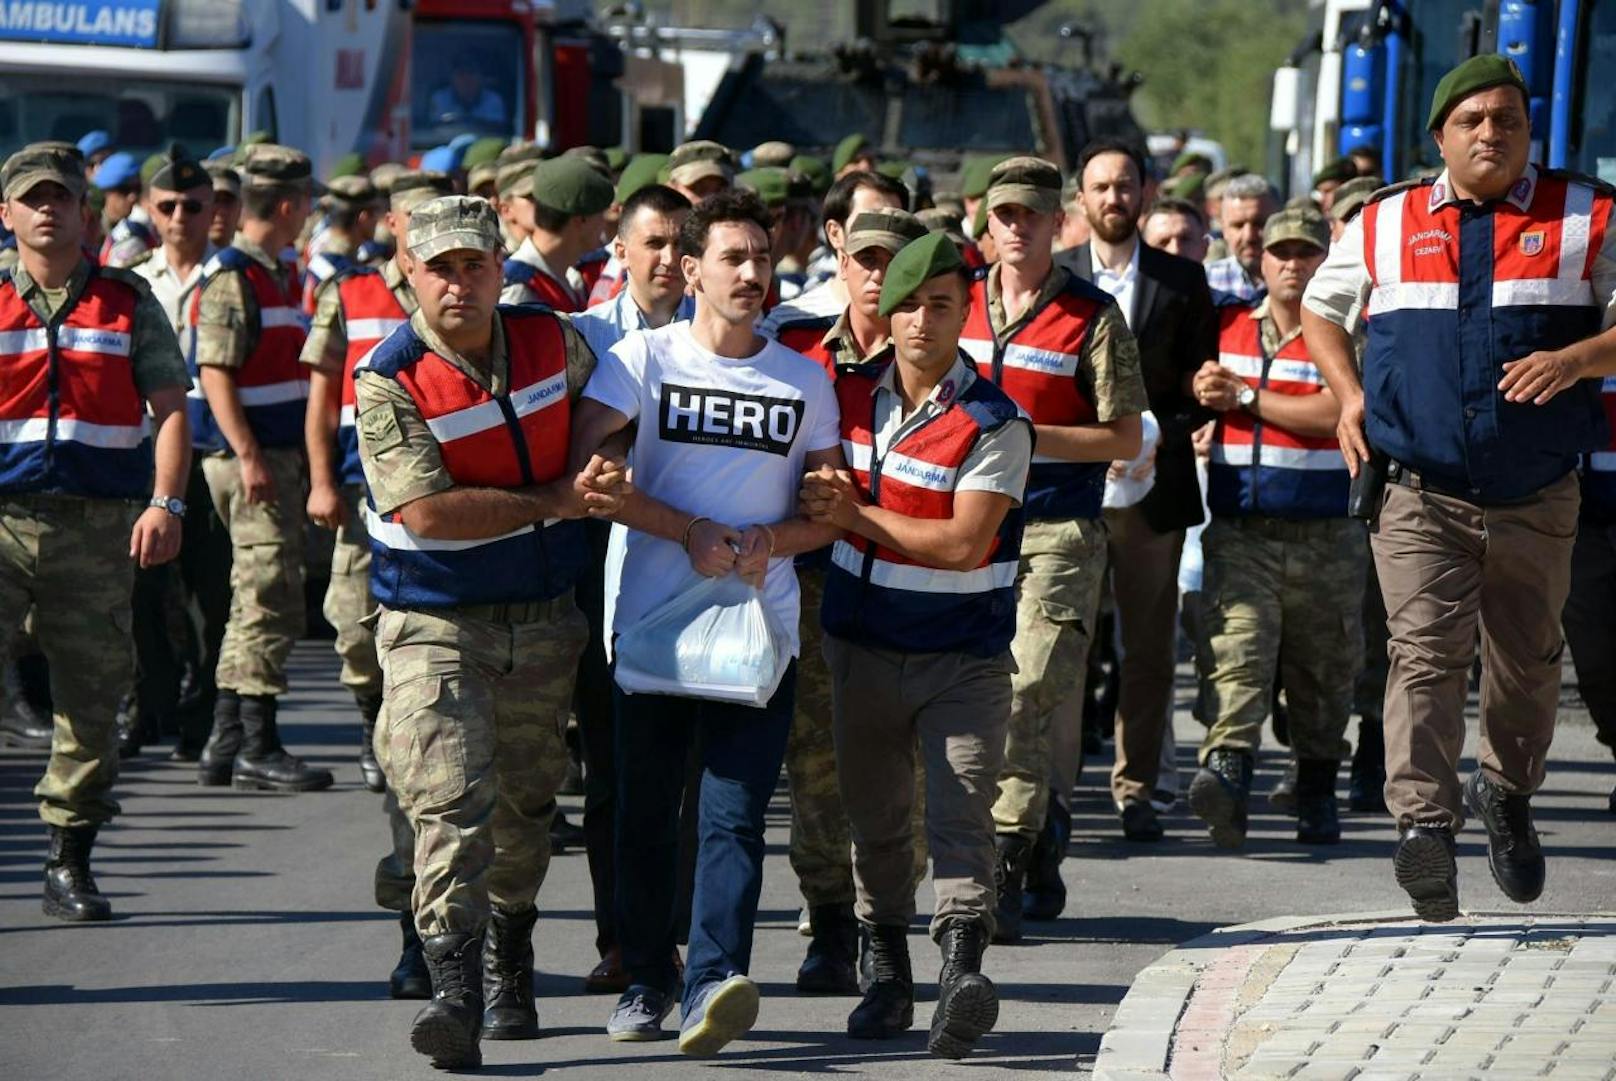 Der erste Fall am 15. Juli: Gökhan Güçlü erschien zu einem Gerichtstermin im weißen "Hero"-T-Shirt und der Richter ließ ihn des Saales verweisen. Der Anwalt des Präsidenten hatte das Kleidungsstück als "Provokation" empfunden.